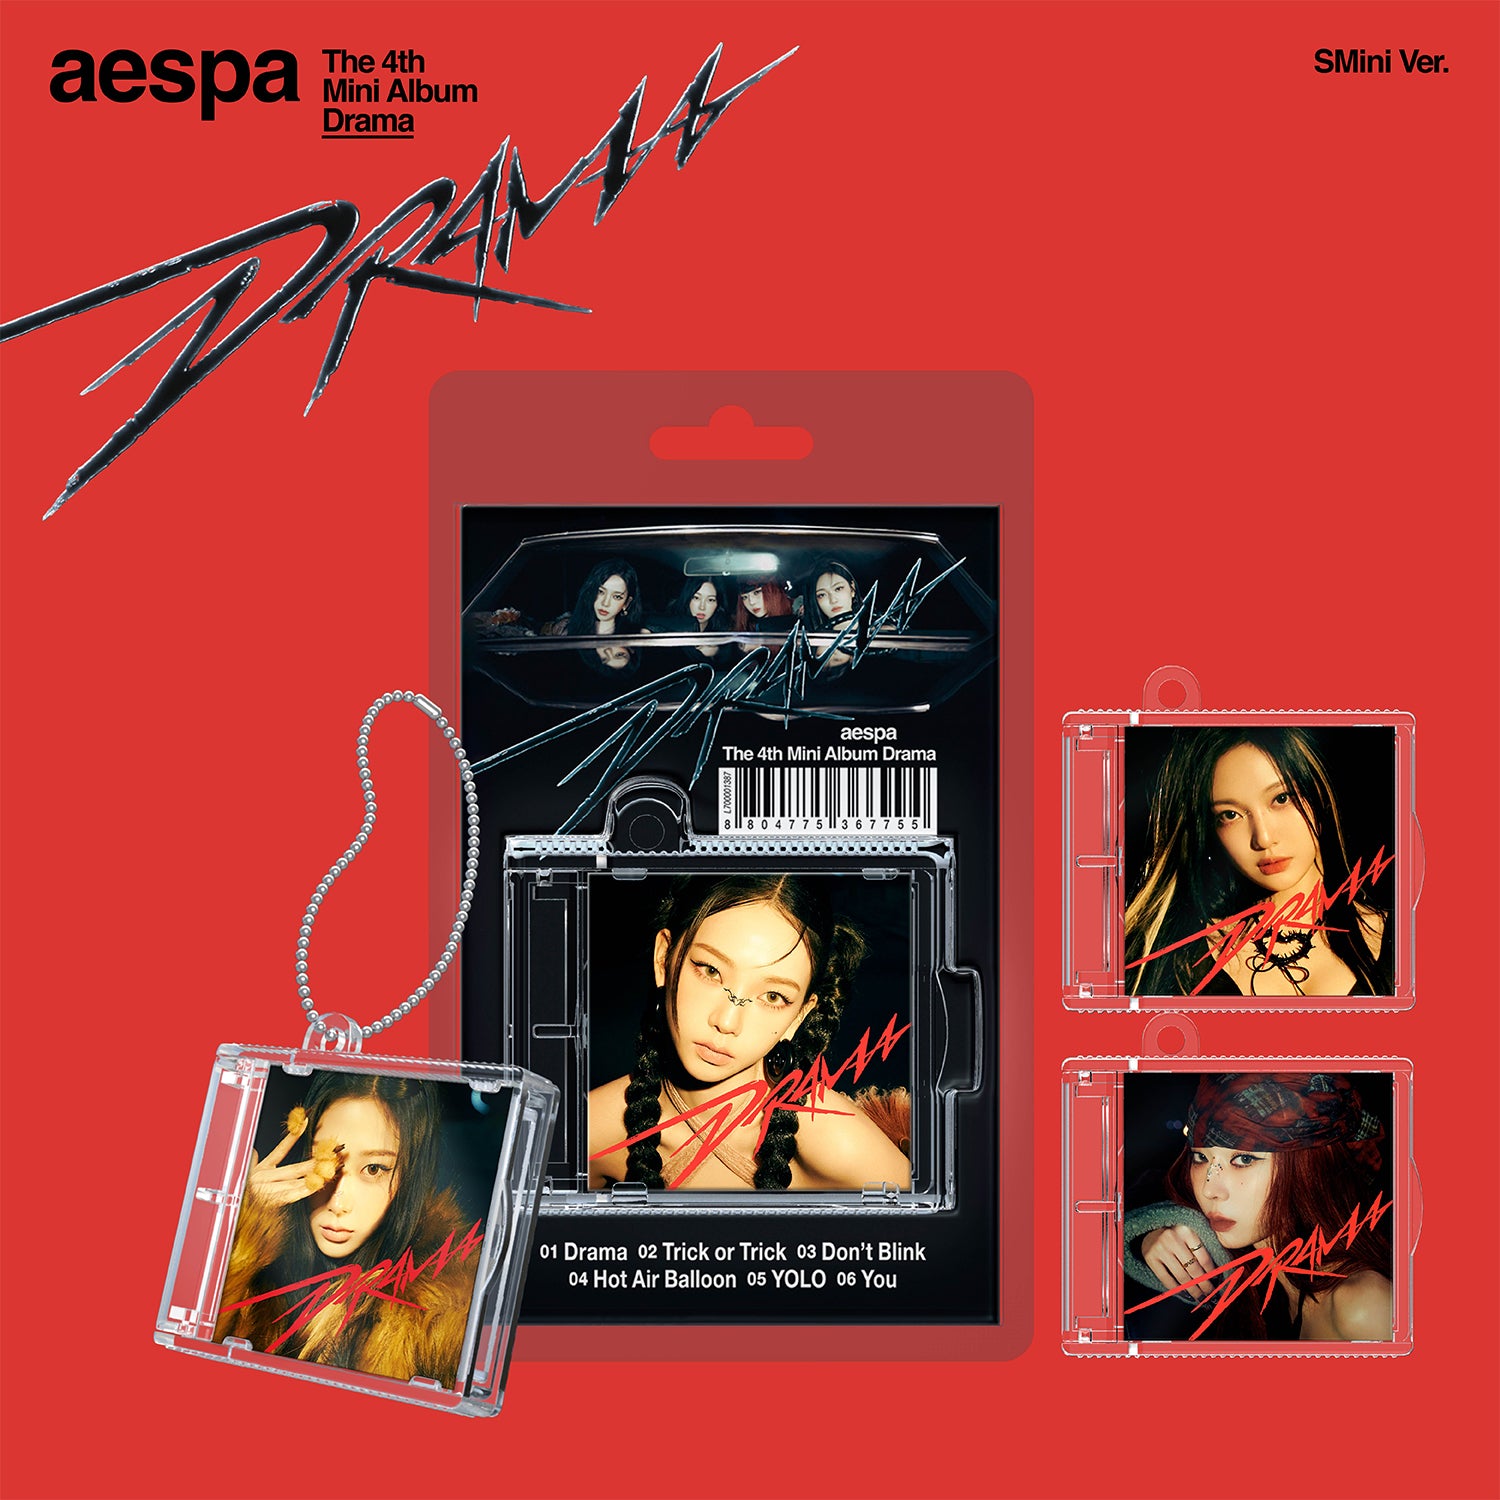 AESPA 4TH MINI ALBUM 'DRAMA' (SMINI) COVER